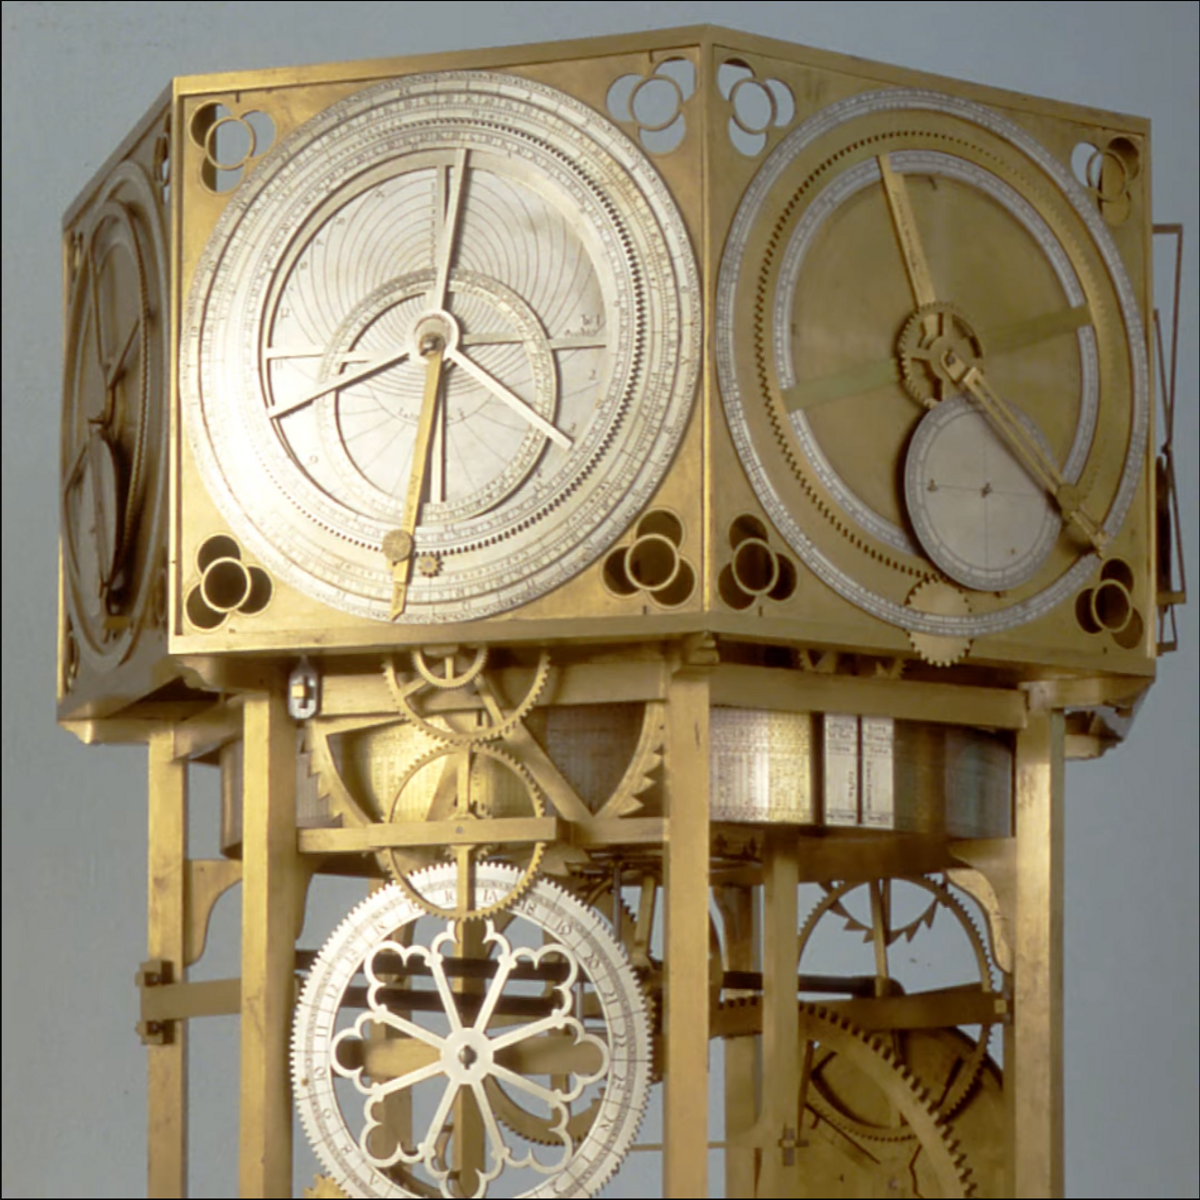 Giovanni Dondi de Padoue, Italie, construit son Astrarium, horloge astronomique